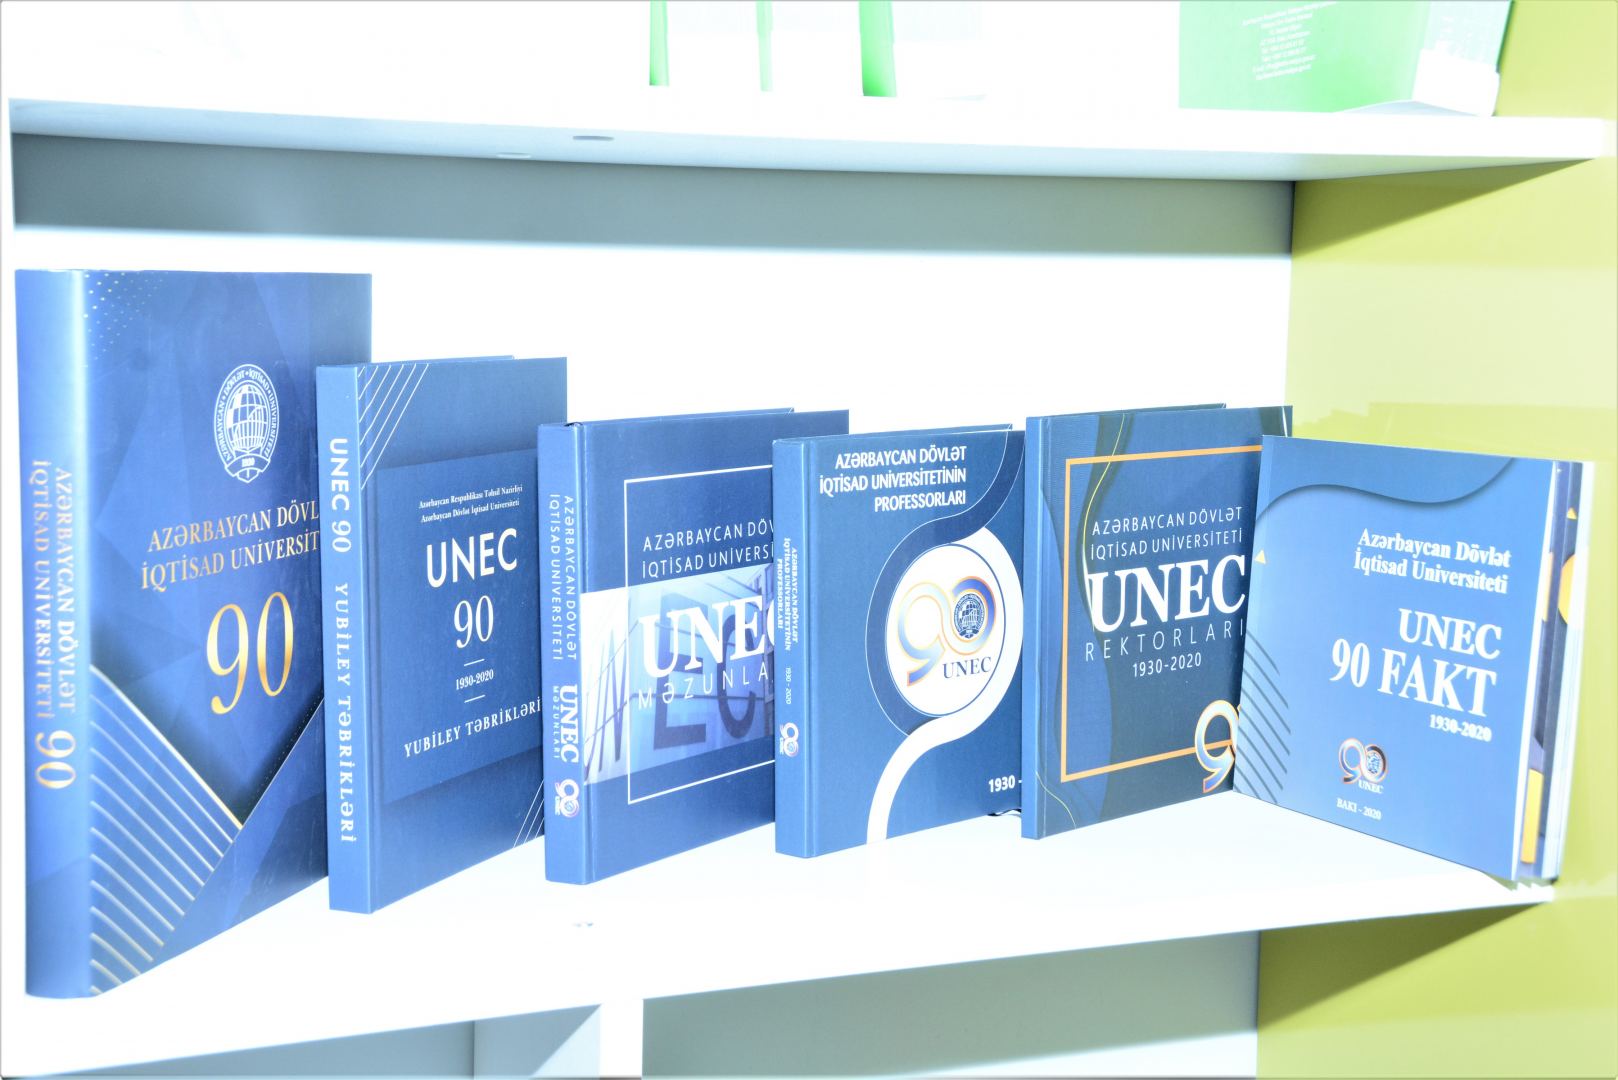 UNEC-in 90 illik yubileyinə töhfə: nəfis tərtibatda kitablar (FOTO)